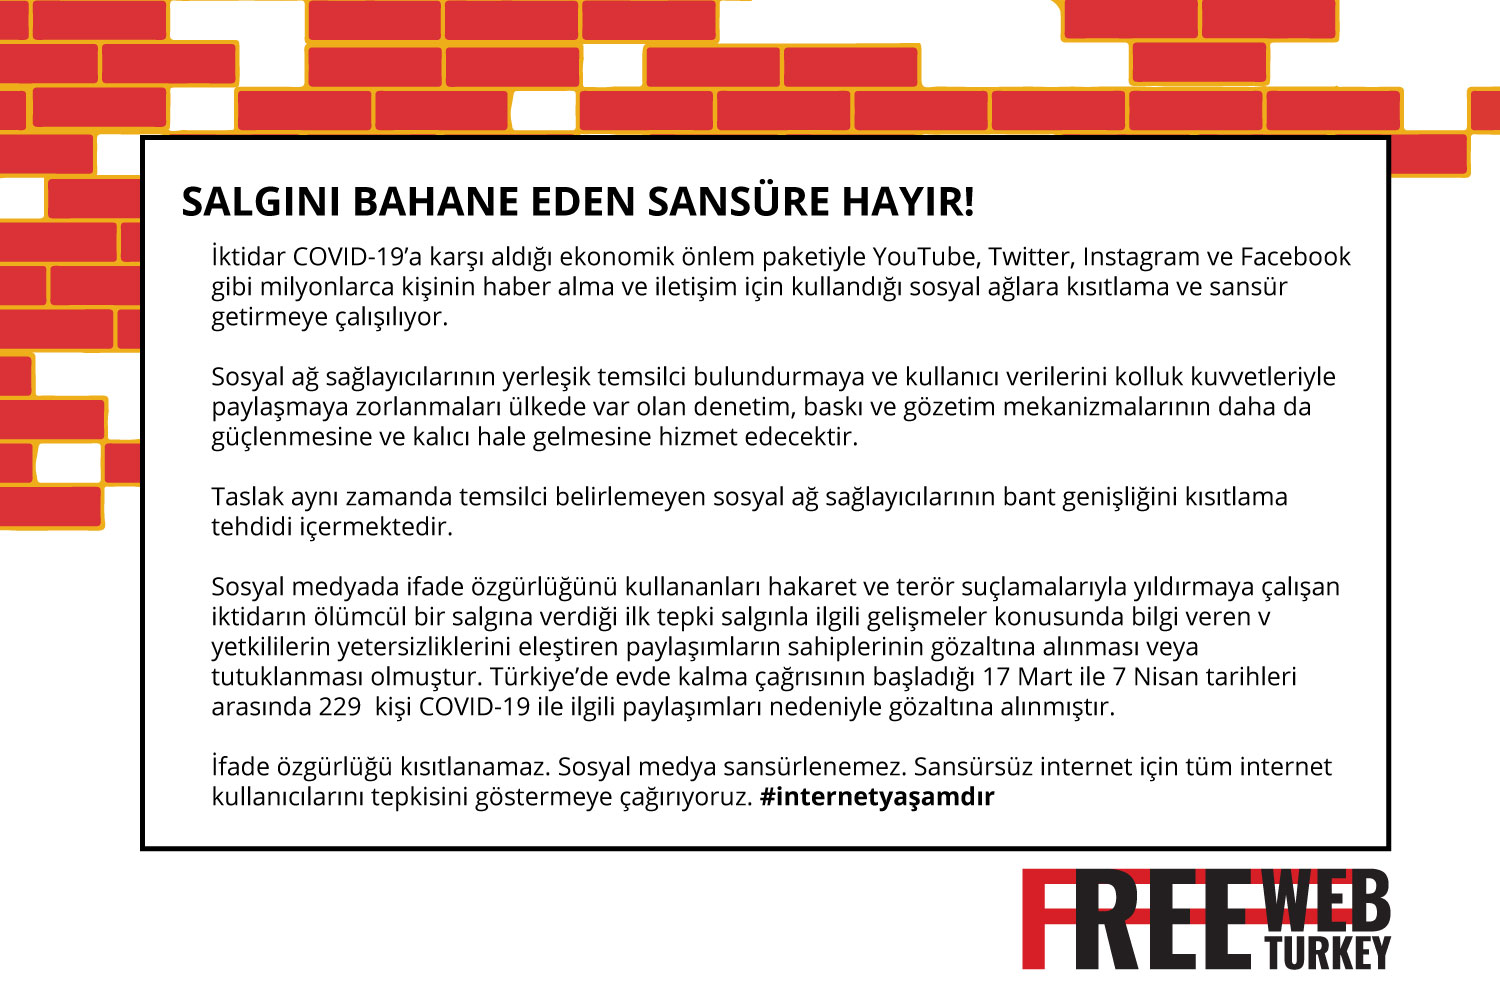 Free Web Turkey Platformu basın açıklaması